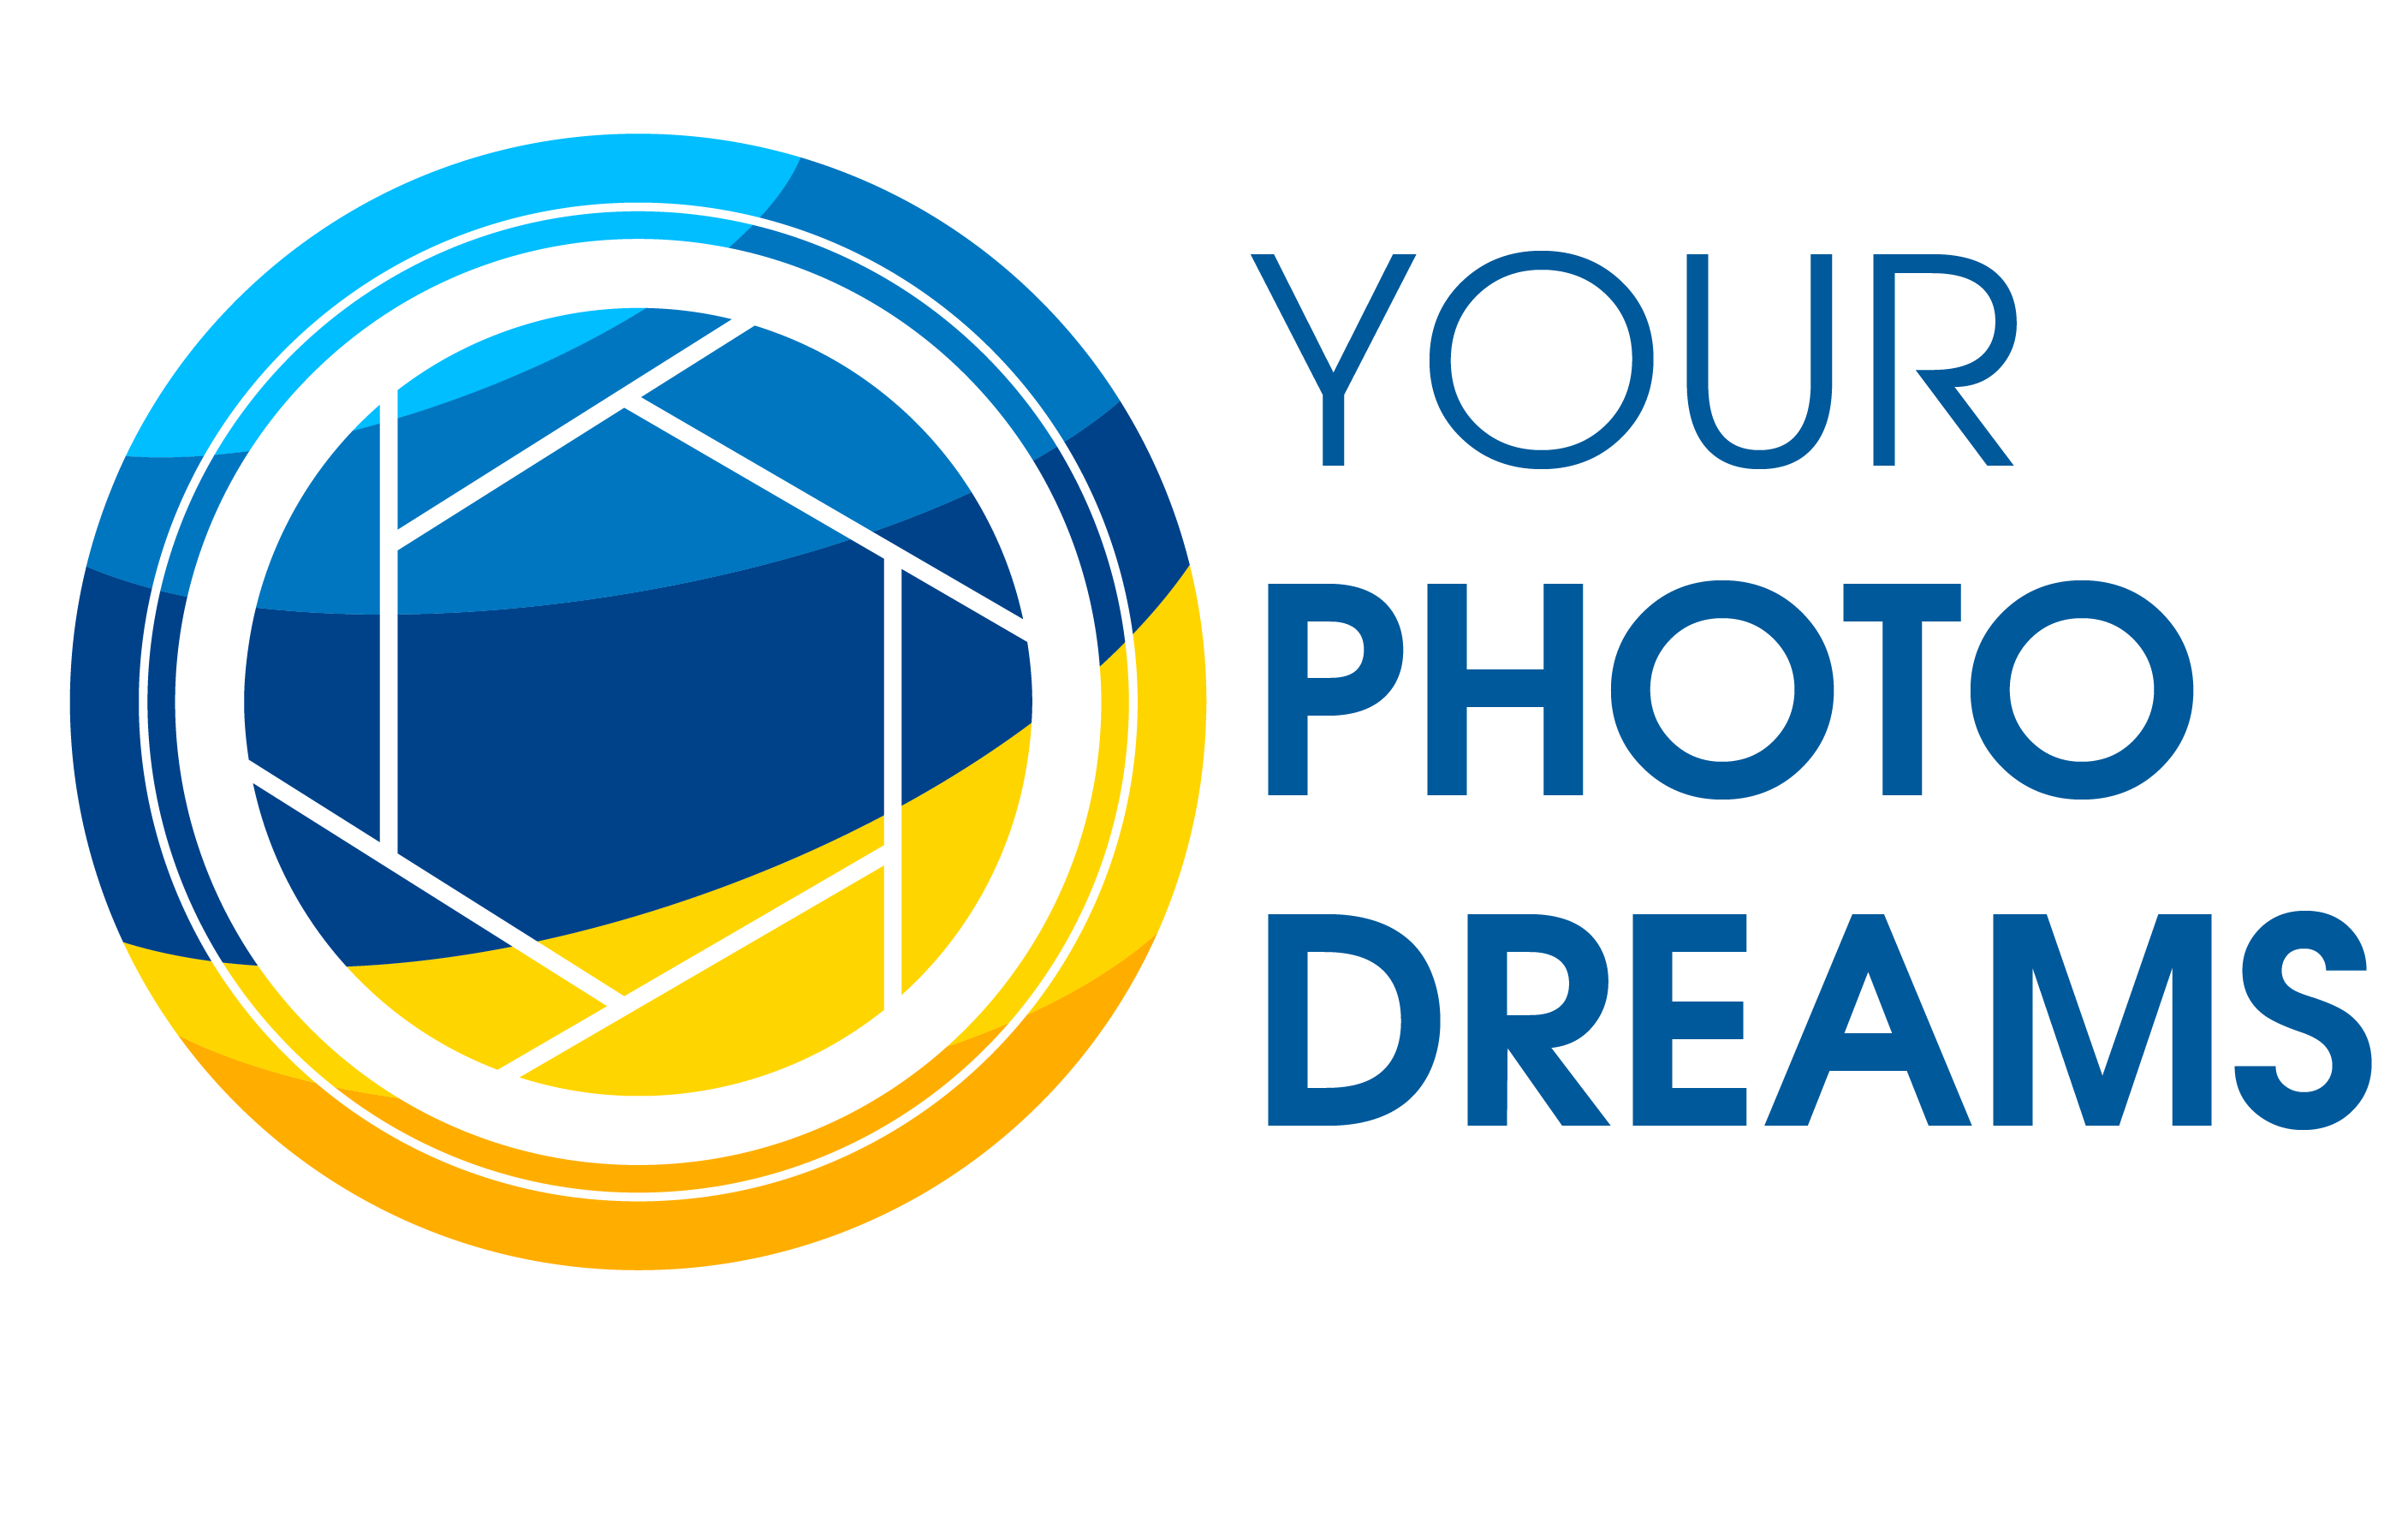 Your photo dreams